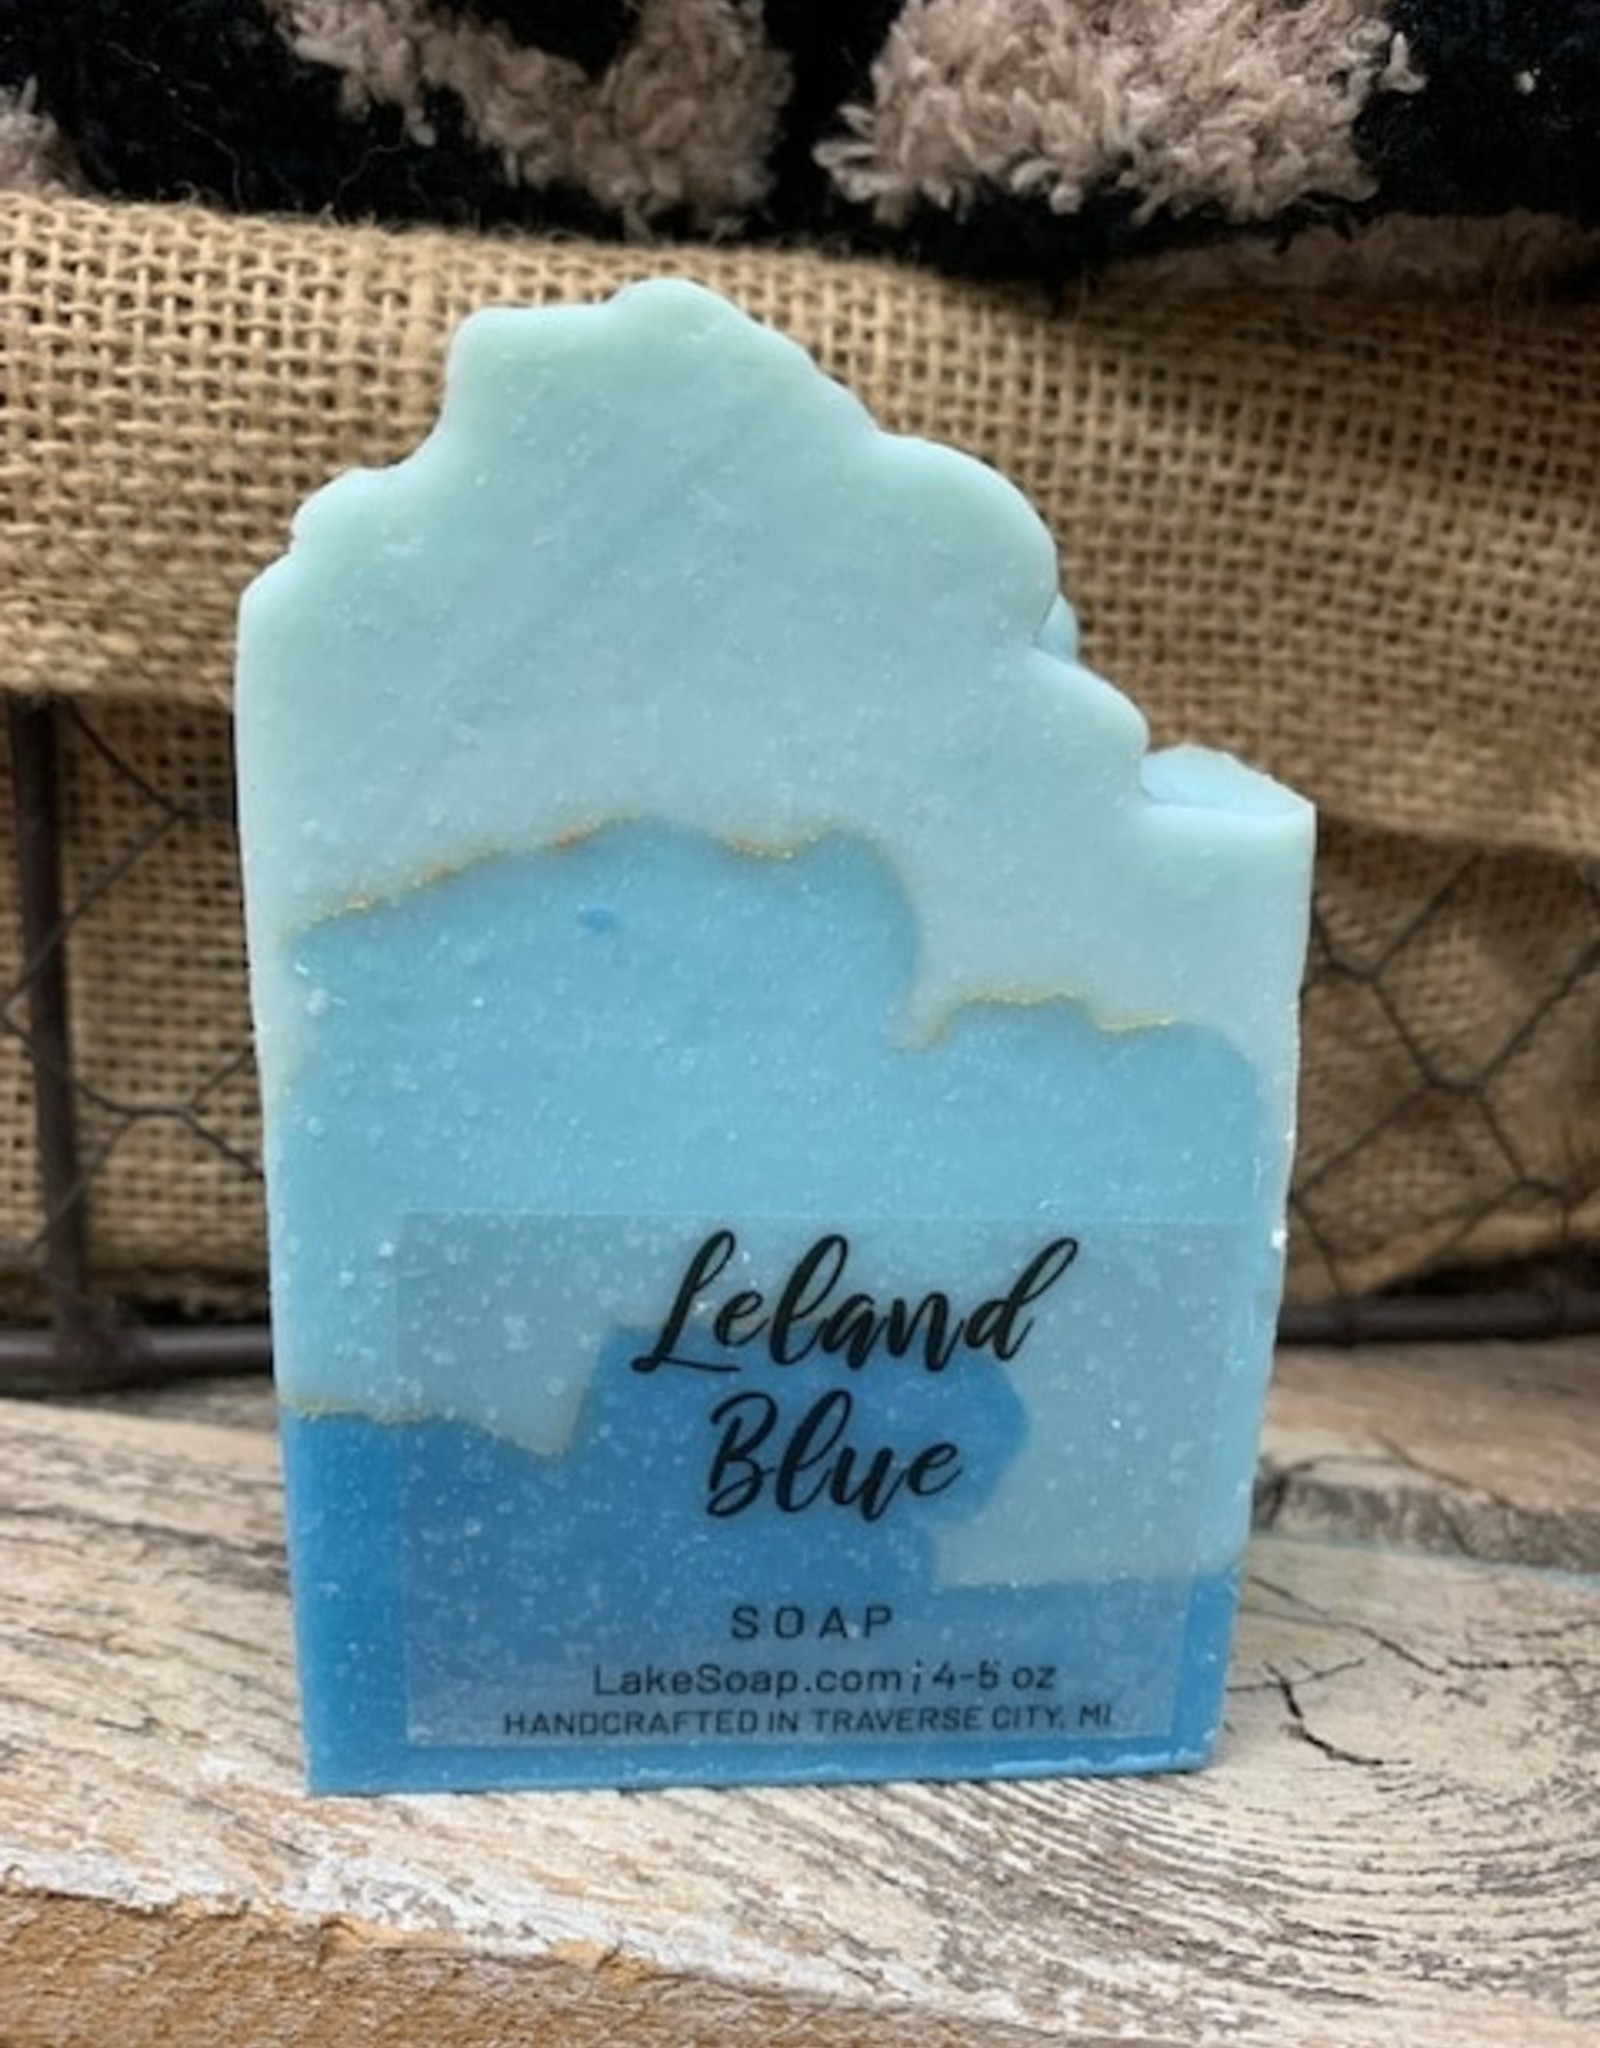 Beauty Lake Soap, Leland Blue